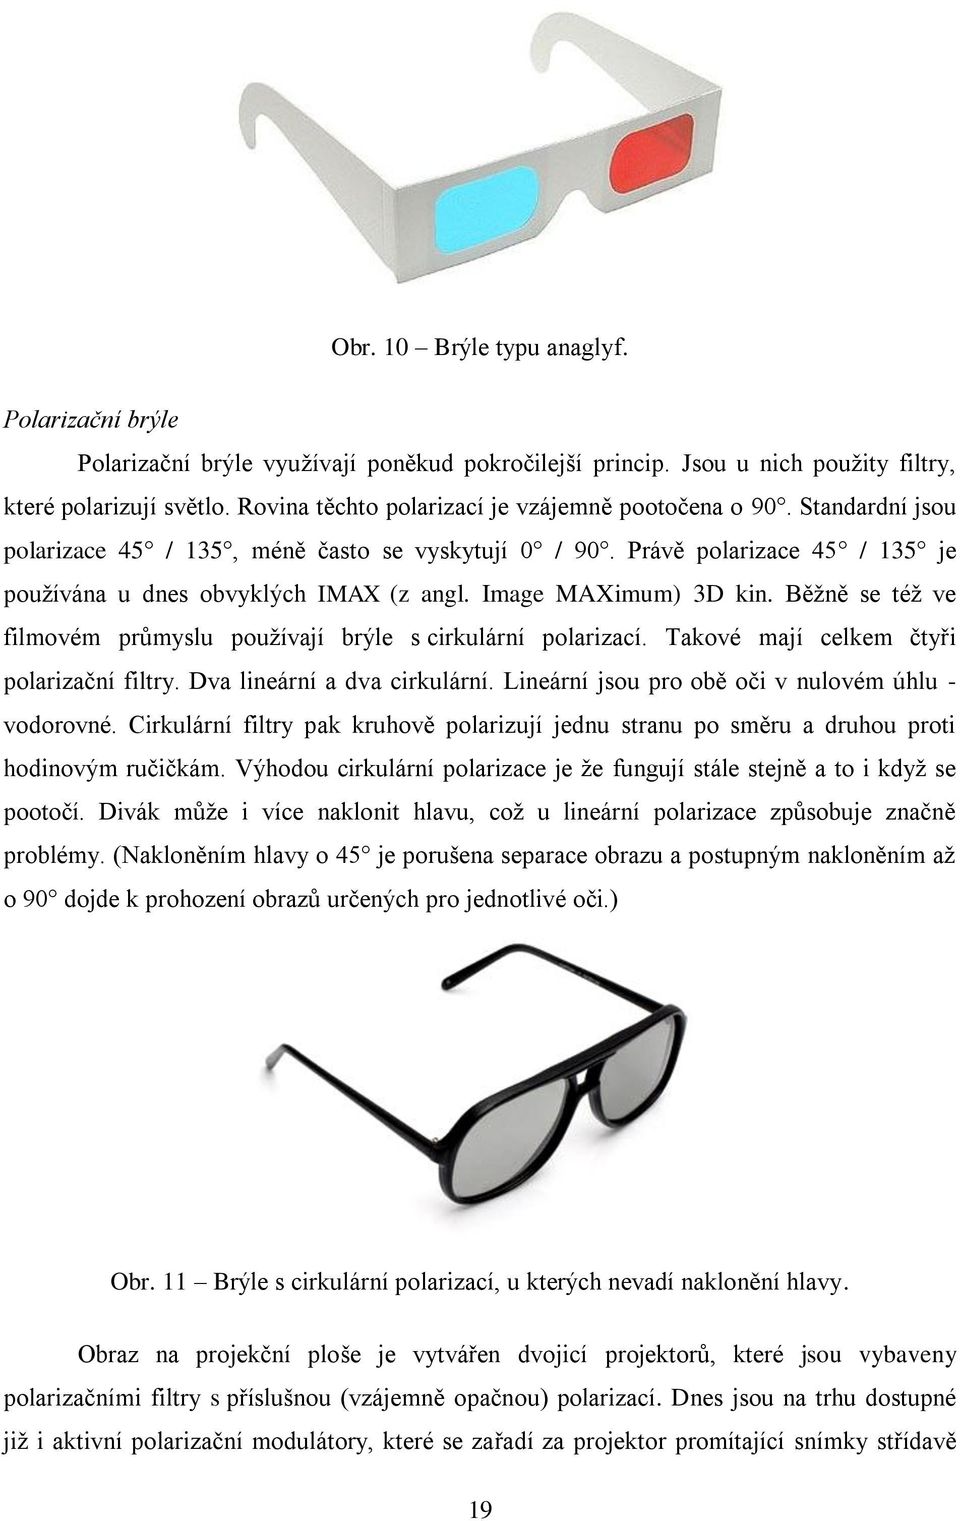 Image MAXimum) 3D kin. Běţně se téţ ve filmovém průmyslu pouţívají brýle s cirkulární polarizací. Takové mají celkem čtyři polarizační filtry. Dva lineární a dva cirkulární.